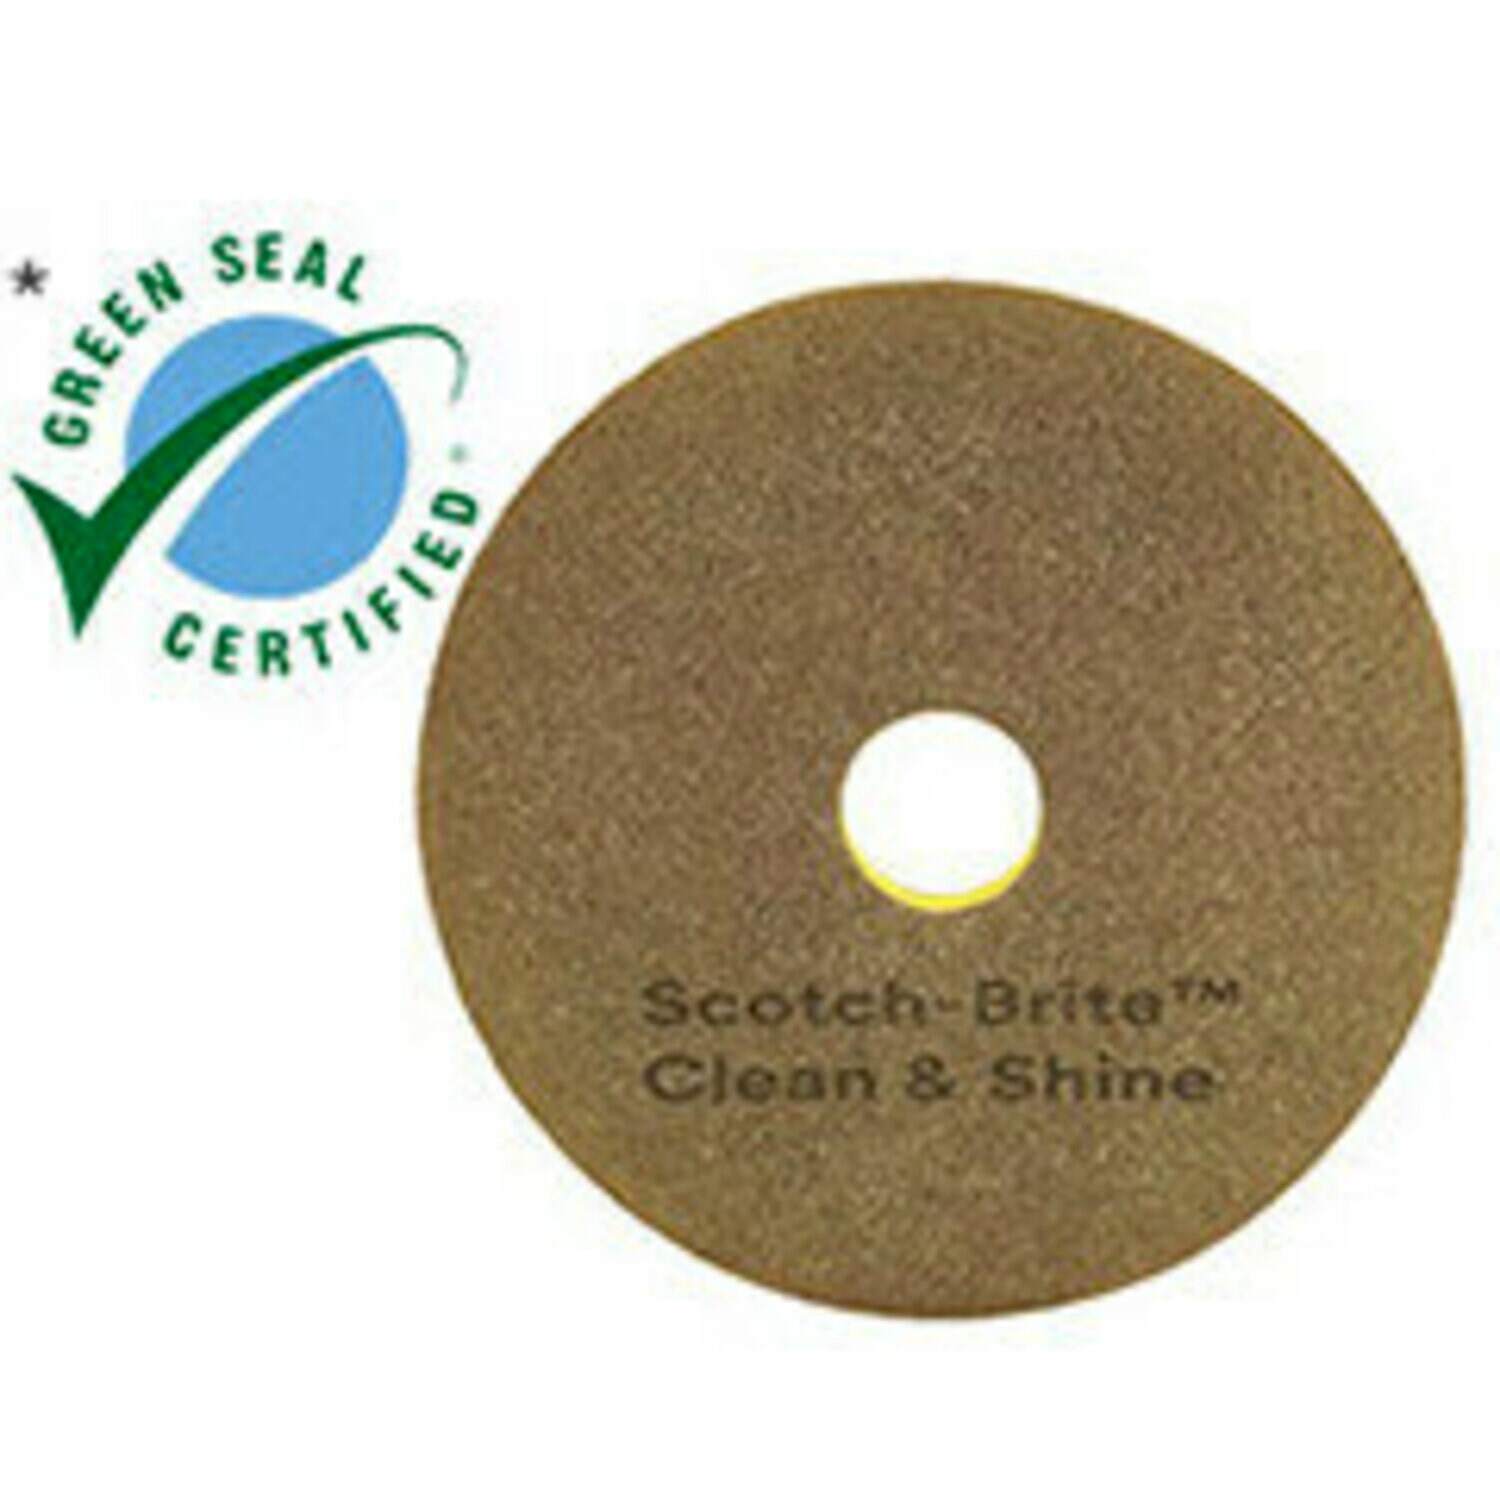 7100148016 - Scotch-Brite Clean & Shine Pad, 23 in, 5/Case